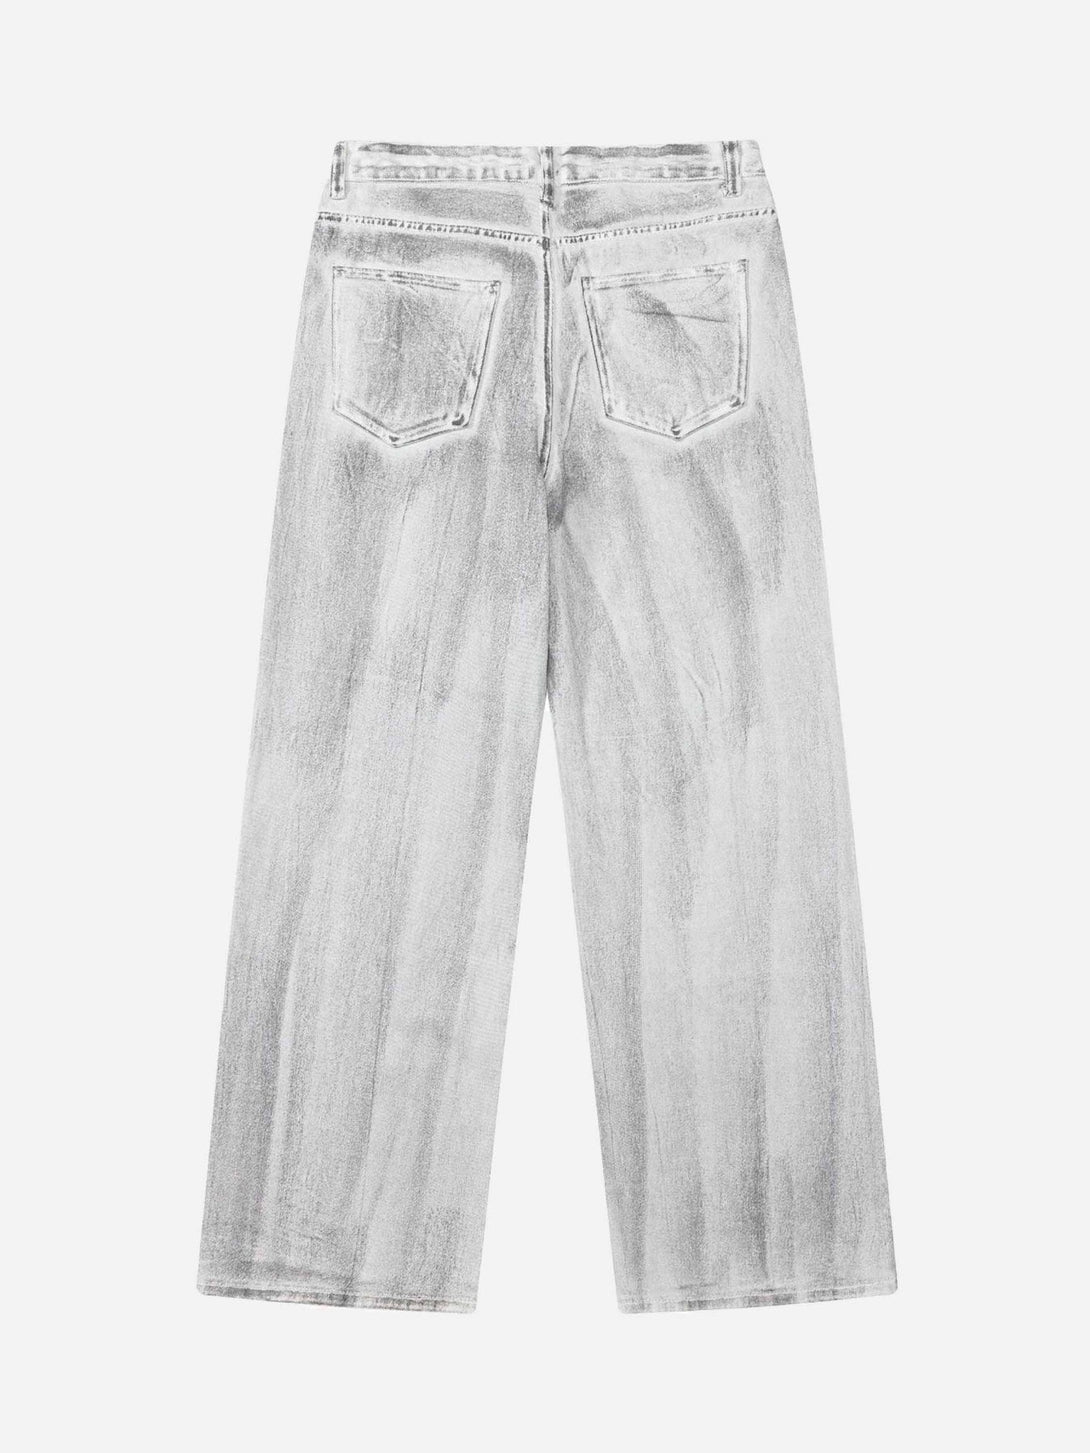 Majesda® - Hip Hop Aged Straight Leg Jeans - 1932- Outfit Ideas - Streetwear Fashion - majesda.com